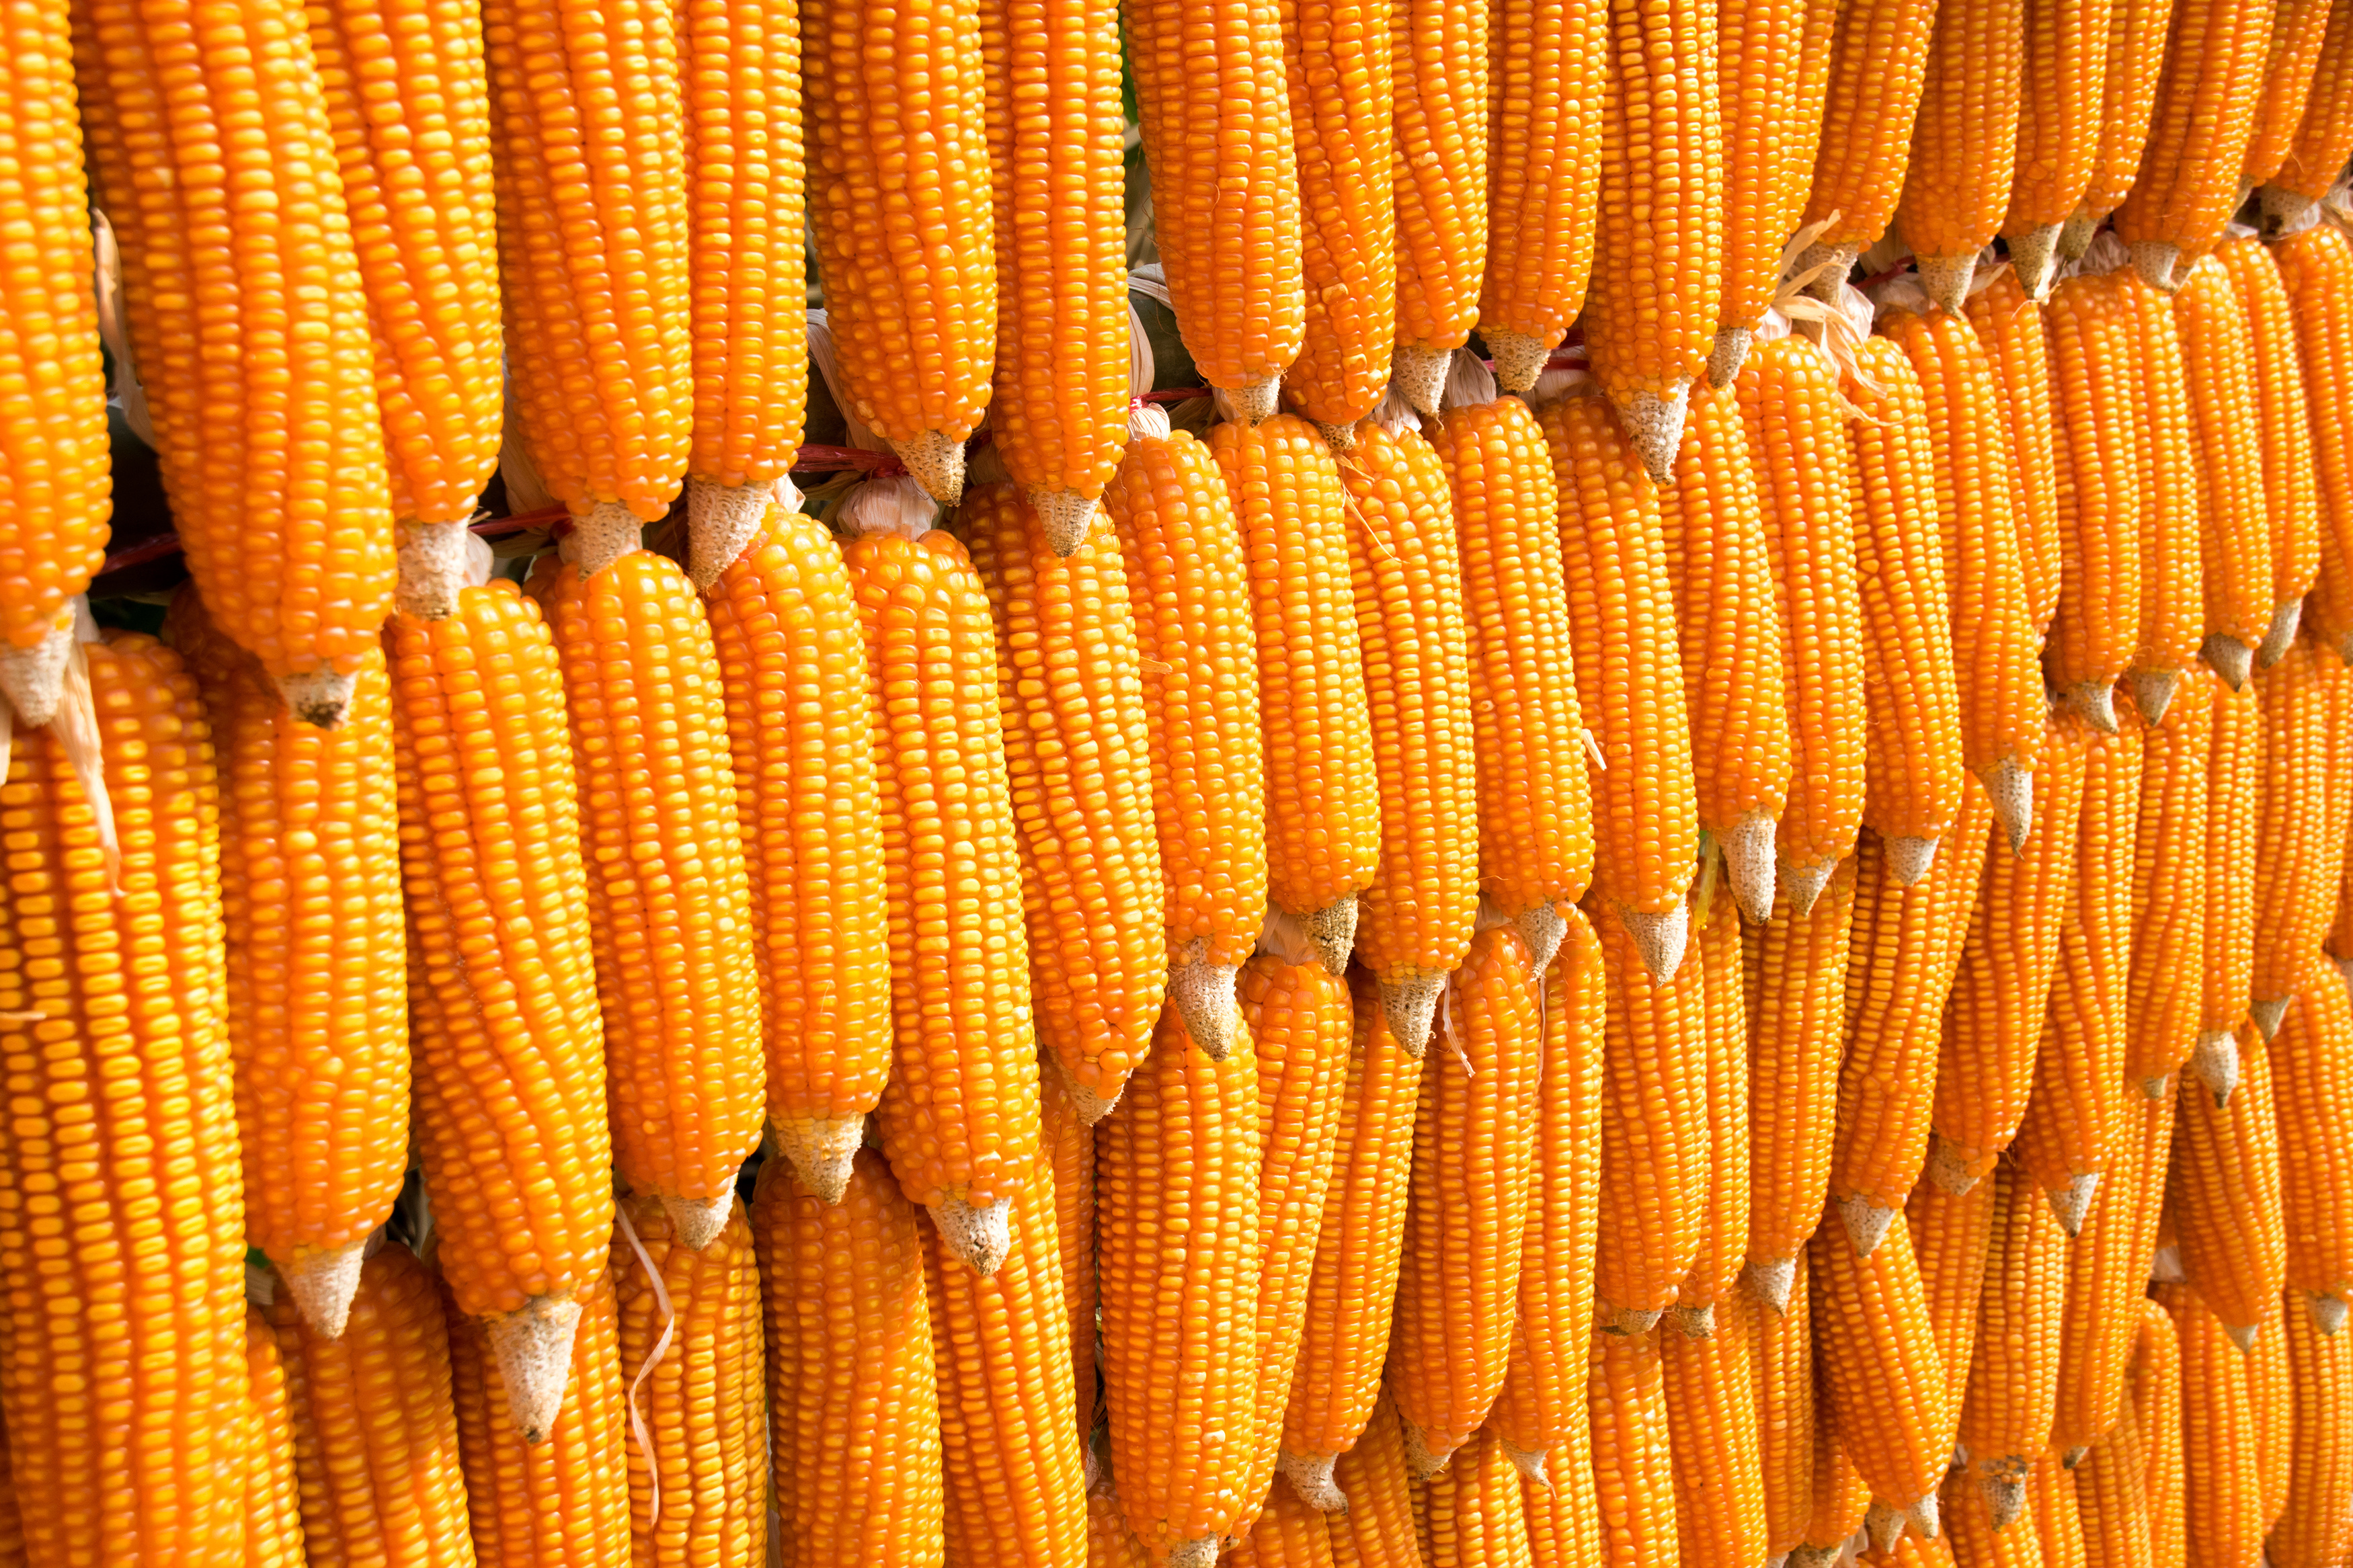 Corn origins